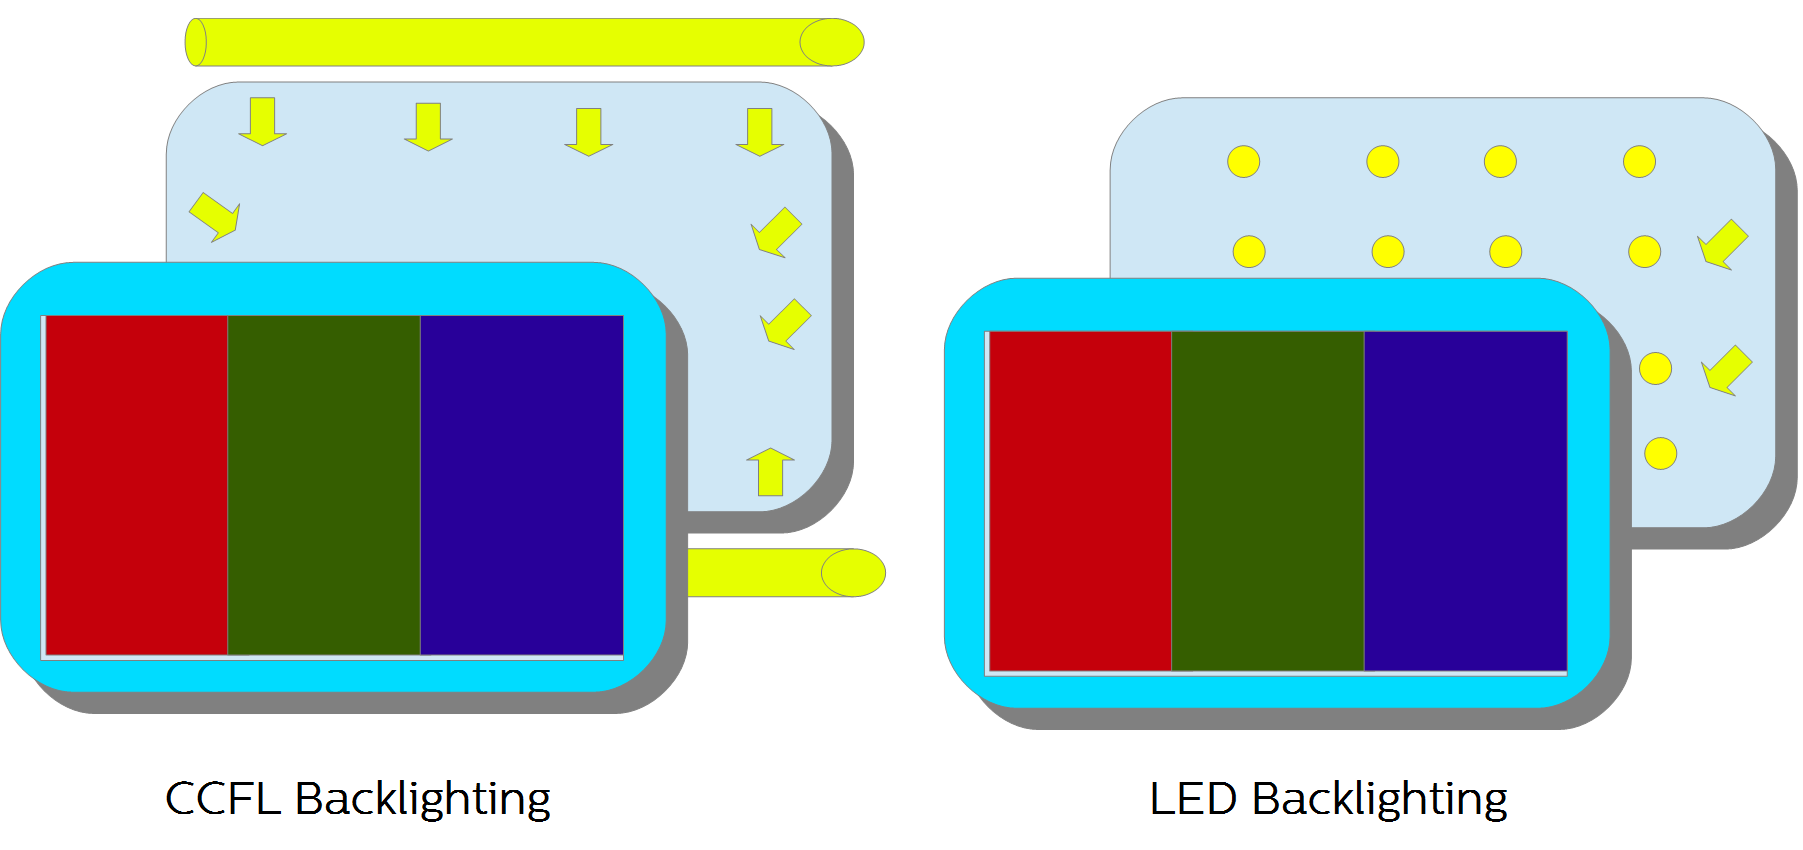 Las soluciones de retroiluminación, tales como la electroluminiscencia (EL - Electroluminescence), las lámparas fluorescentes de cátodo frío (CCFL - Cold Cathode Fluorescent Lamp) y los diodos